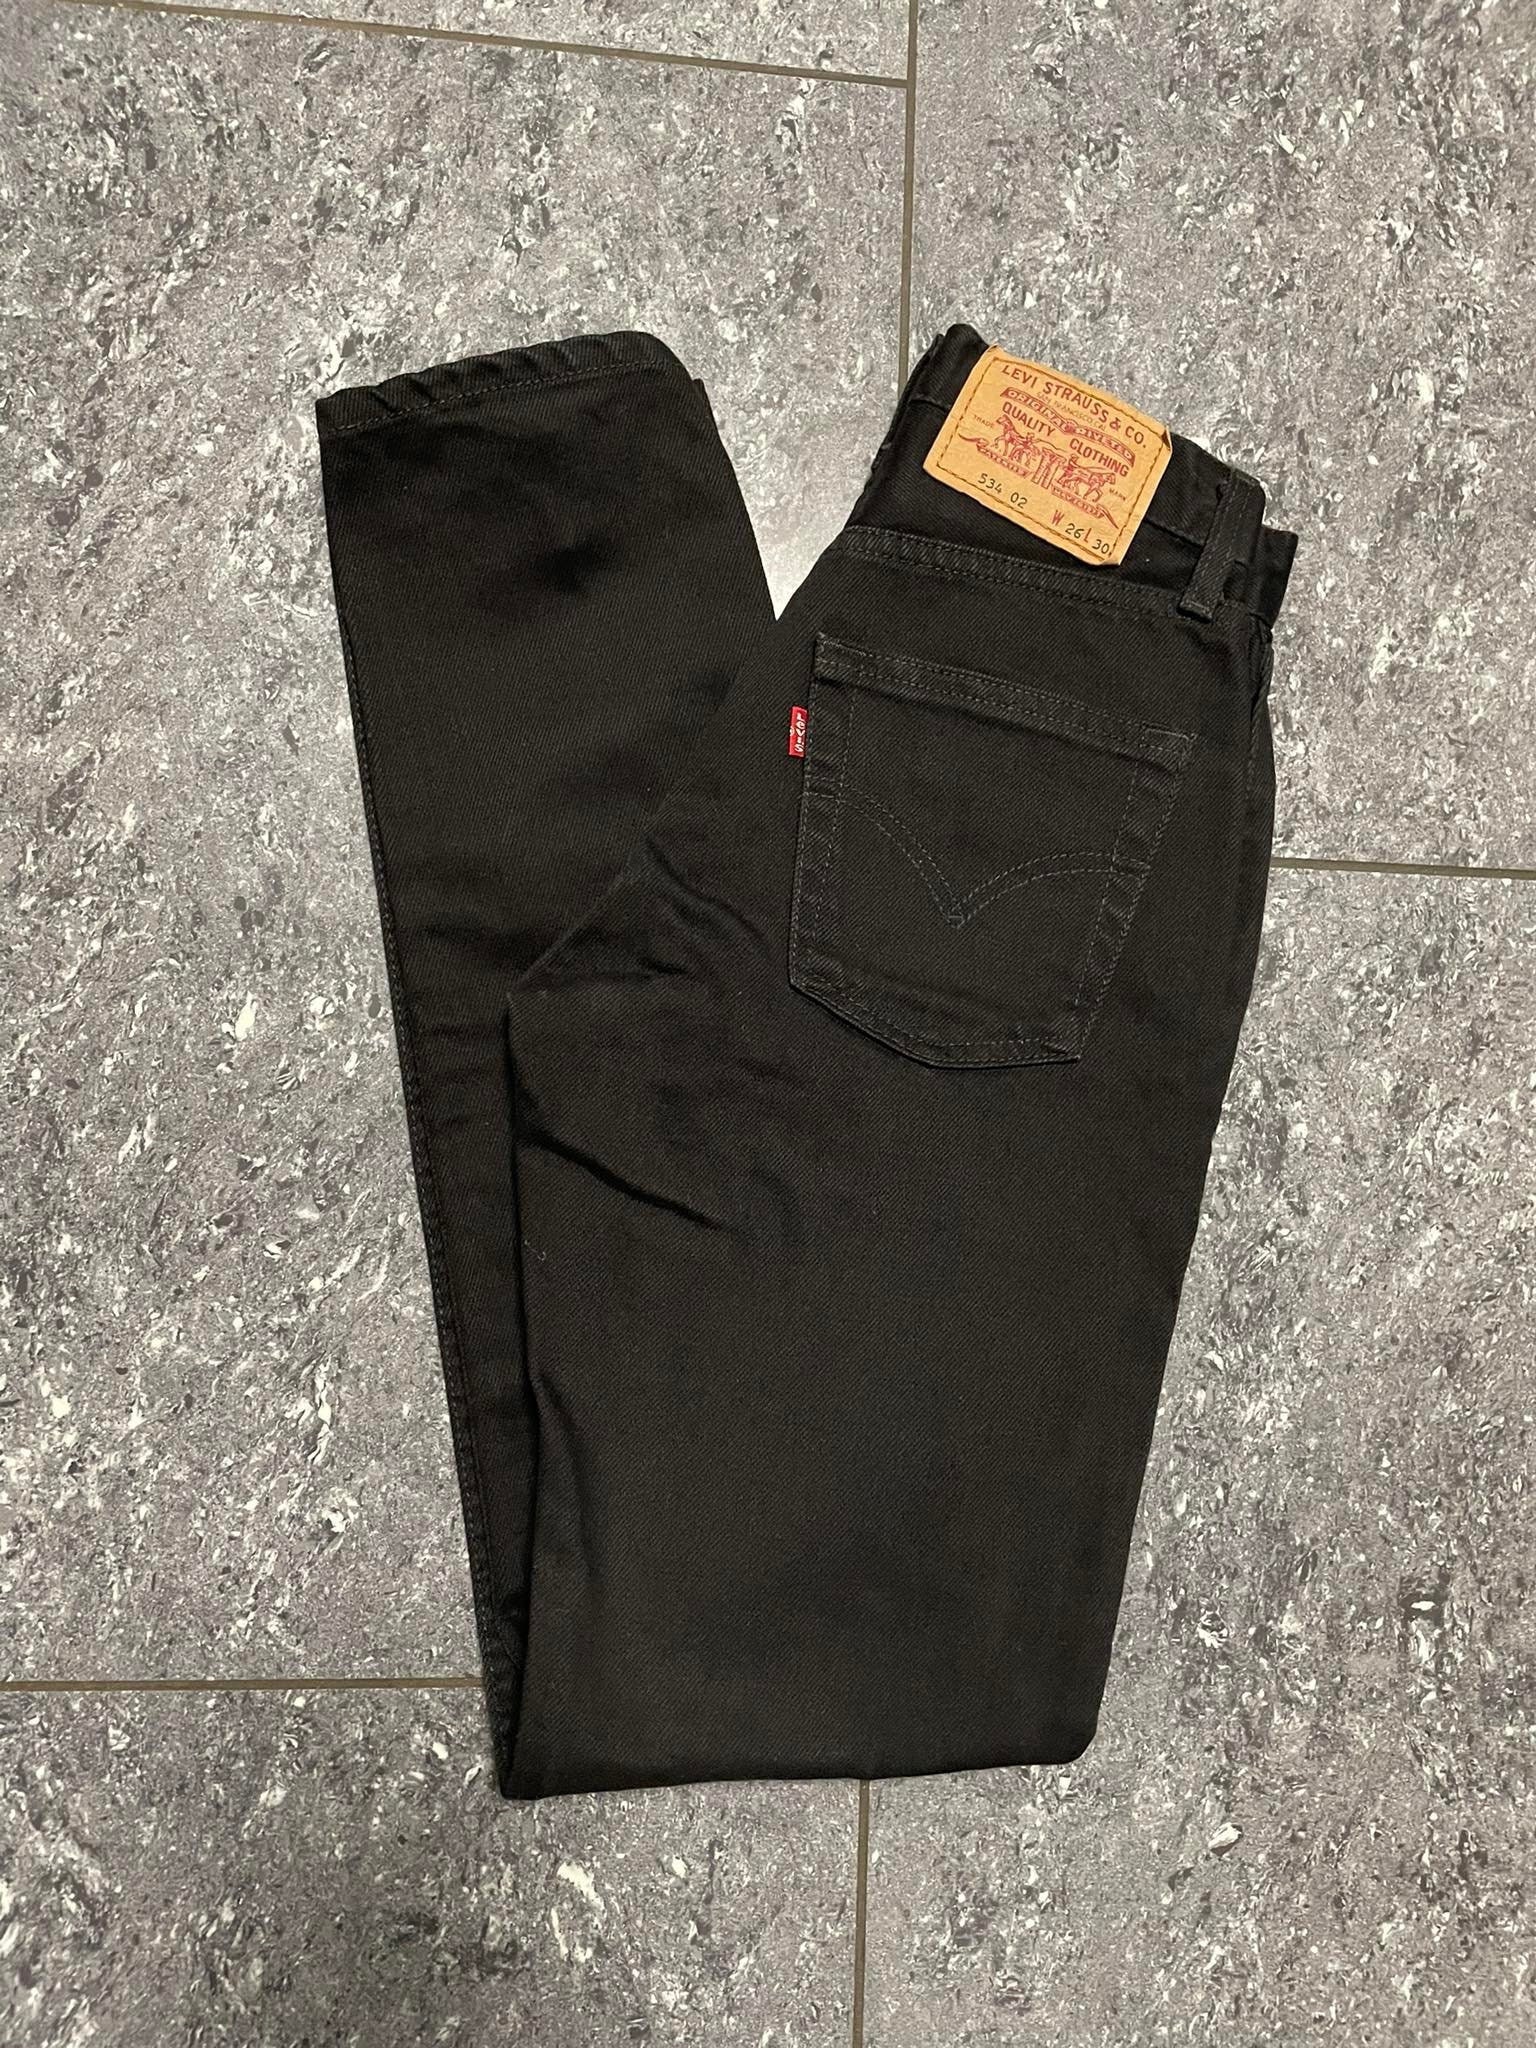 Vintage Black Jeans/levis W26 L30/levis 534 Etsy